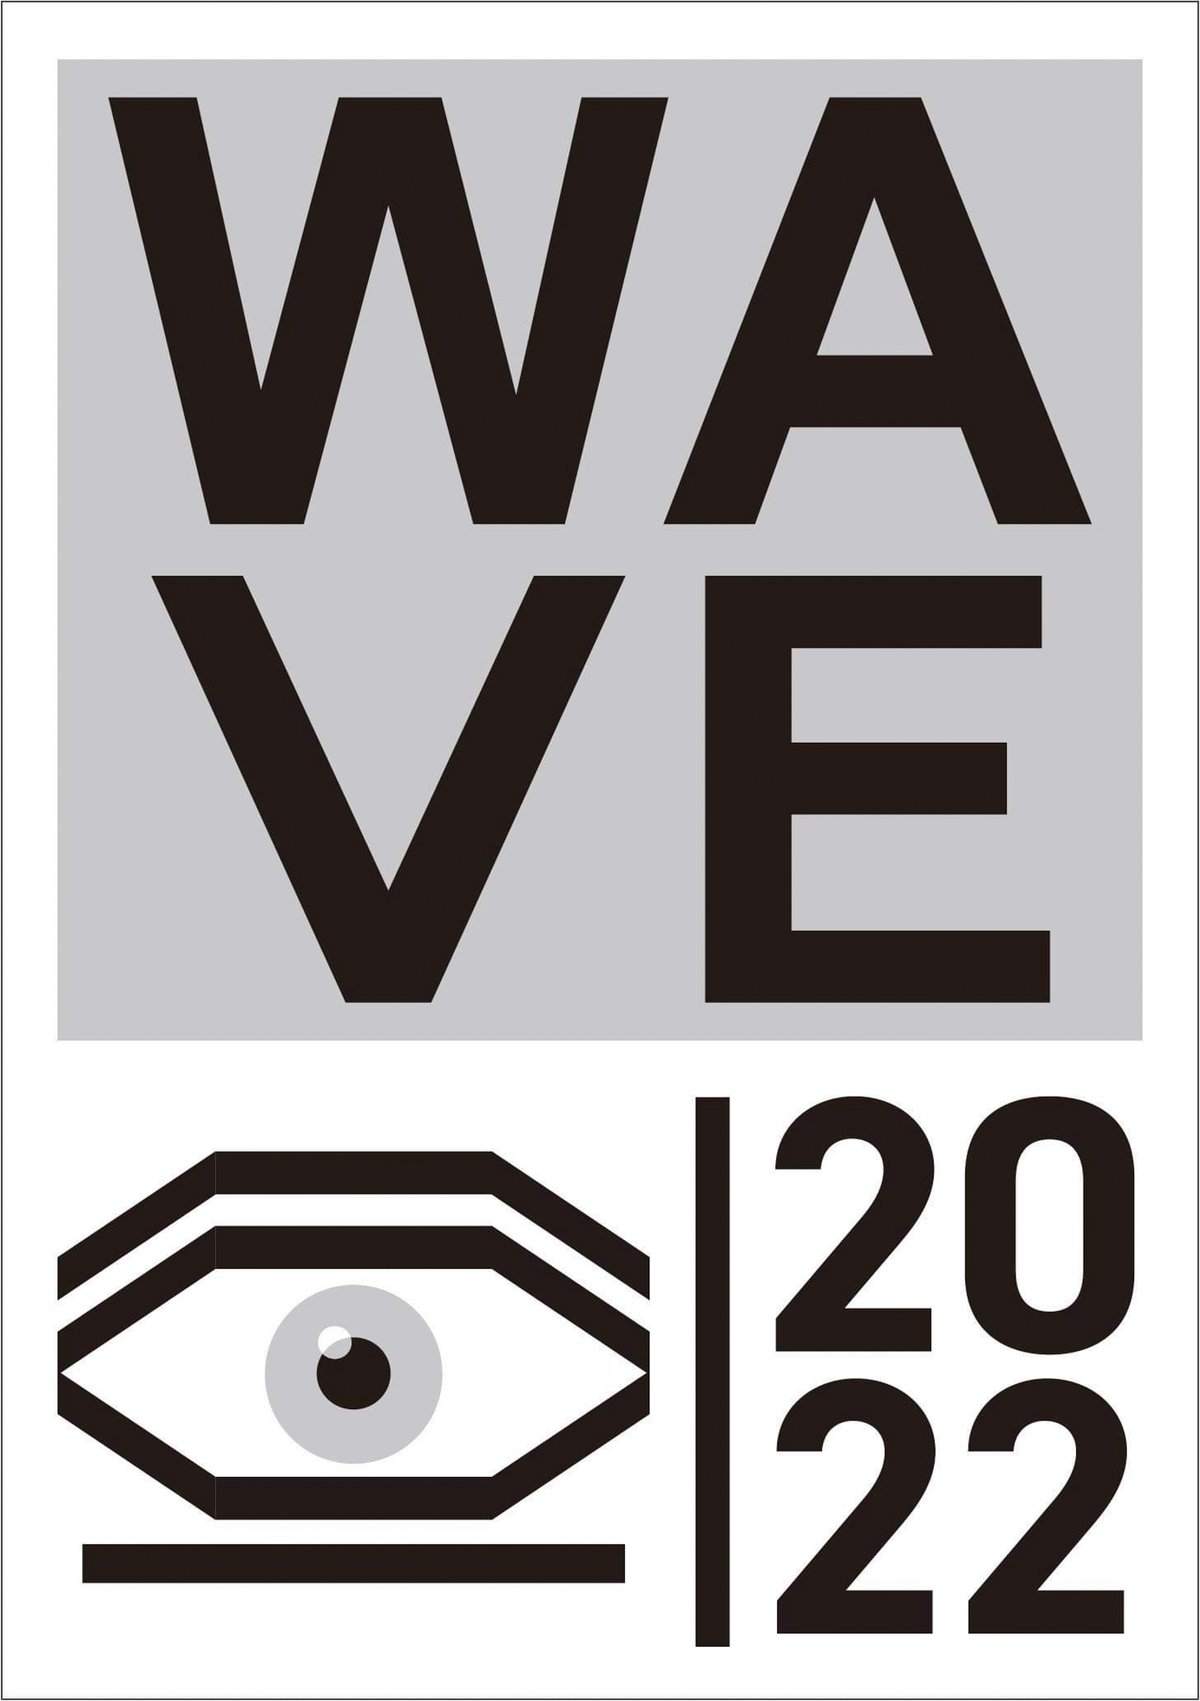  アート展「WAVE 2022」のメインヴィジュアル